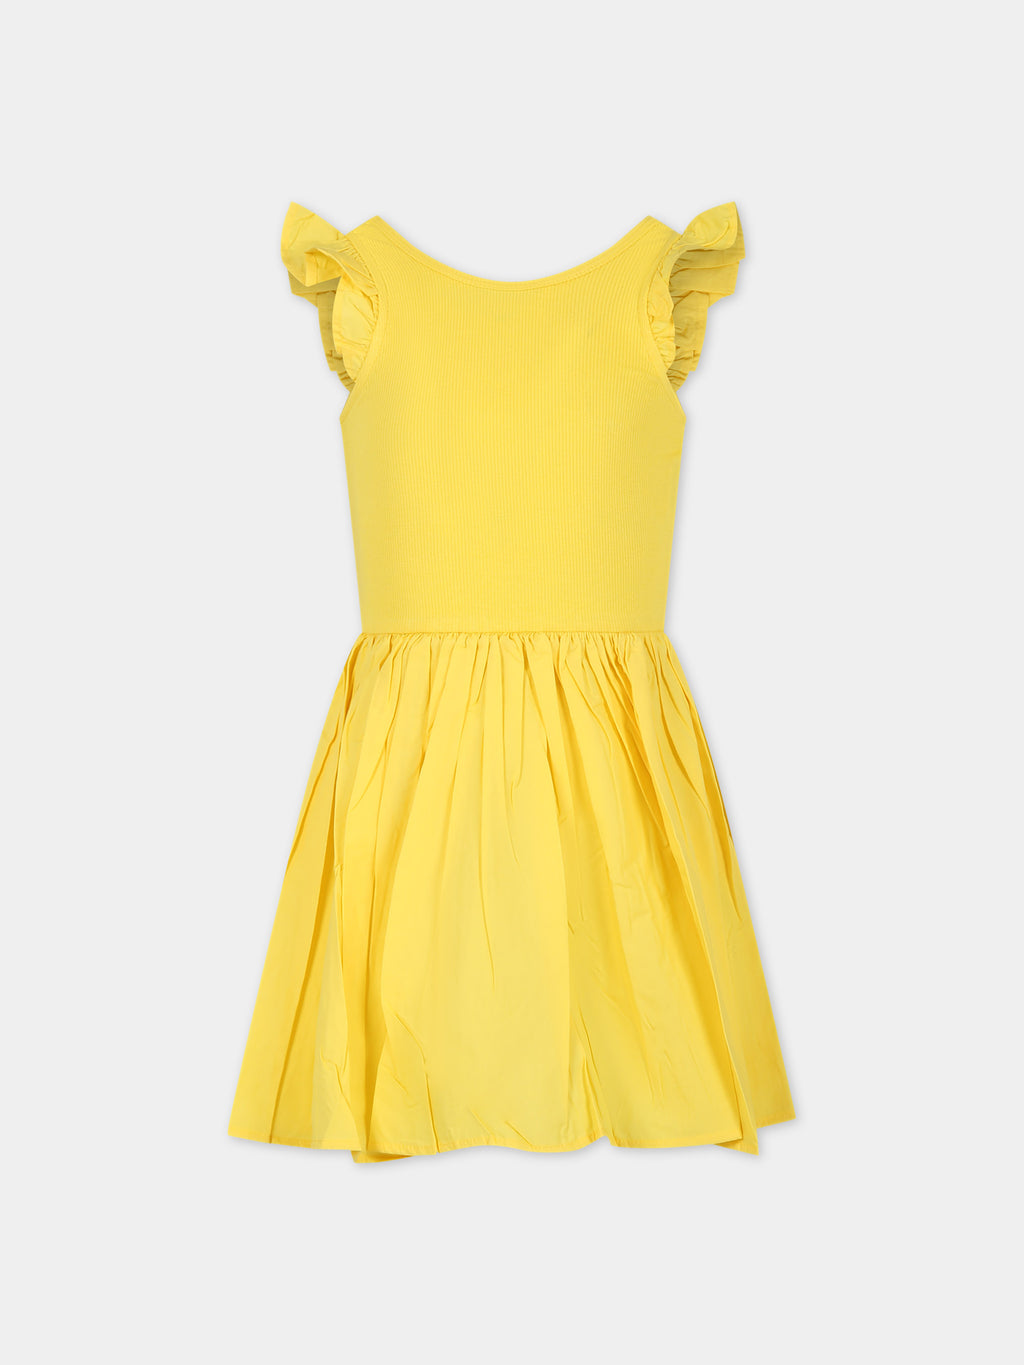 Vestito giallo per bambina